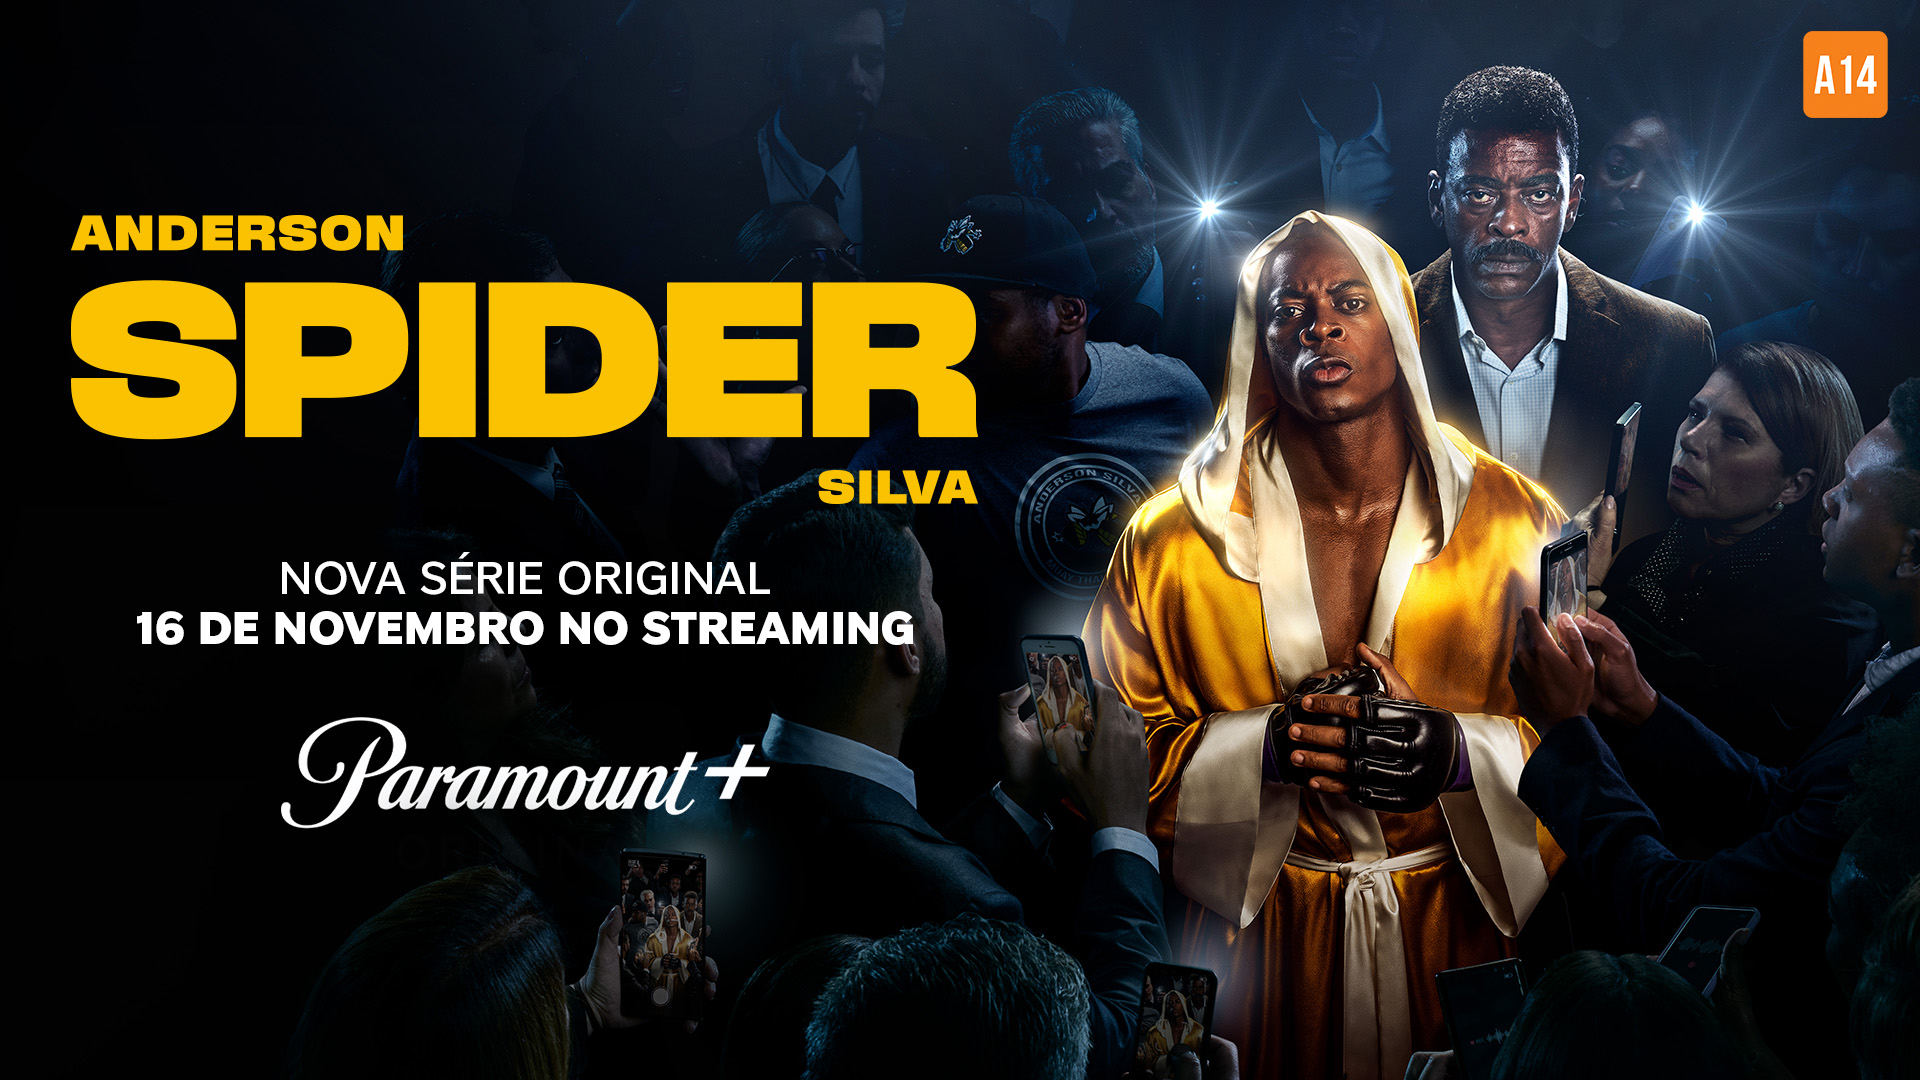 Anderson Spider Silva: veja enredo e elenco da série do Paramount+